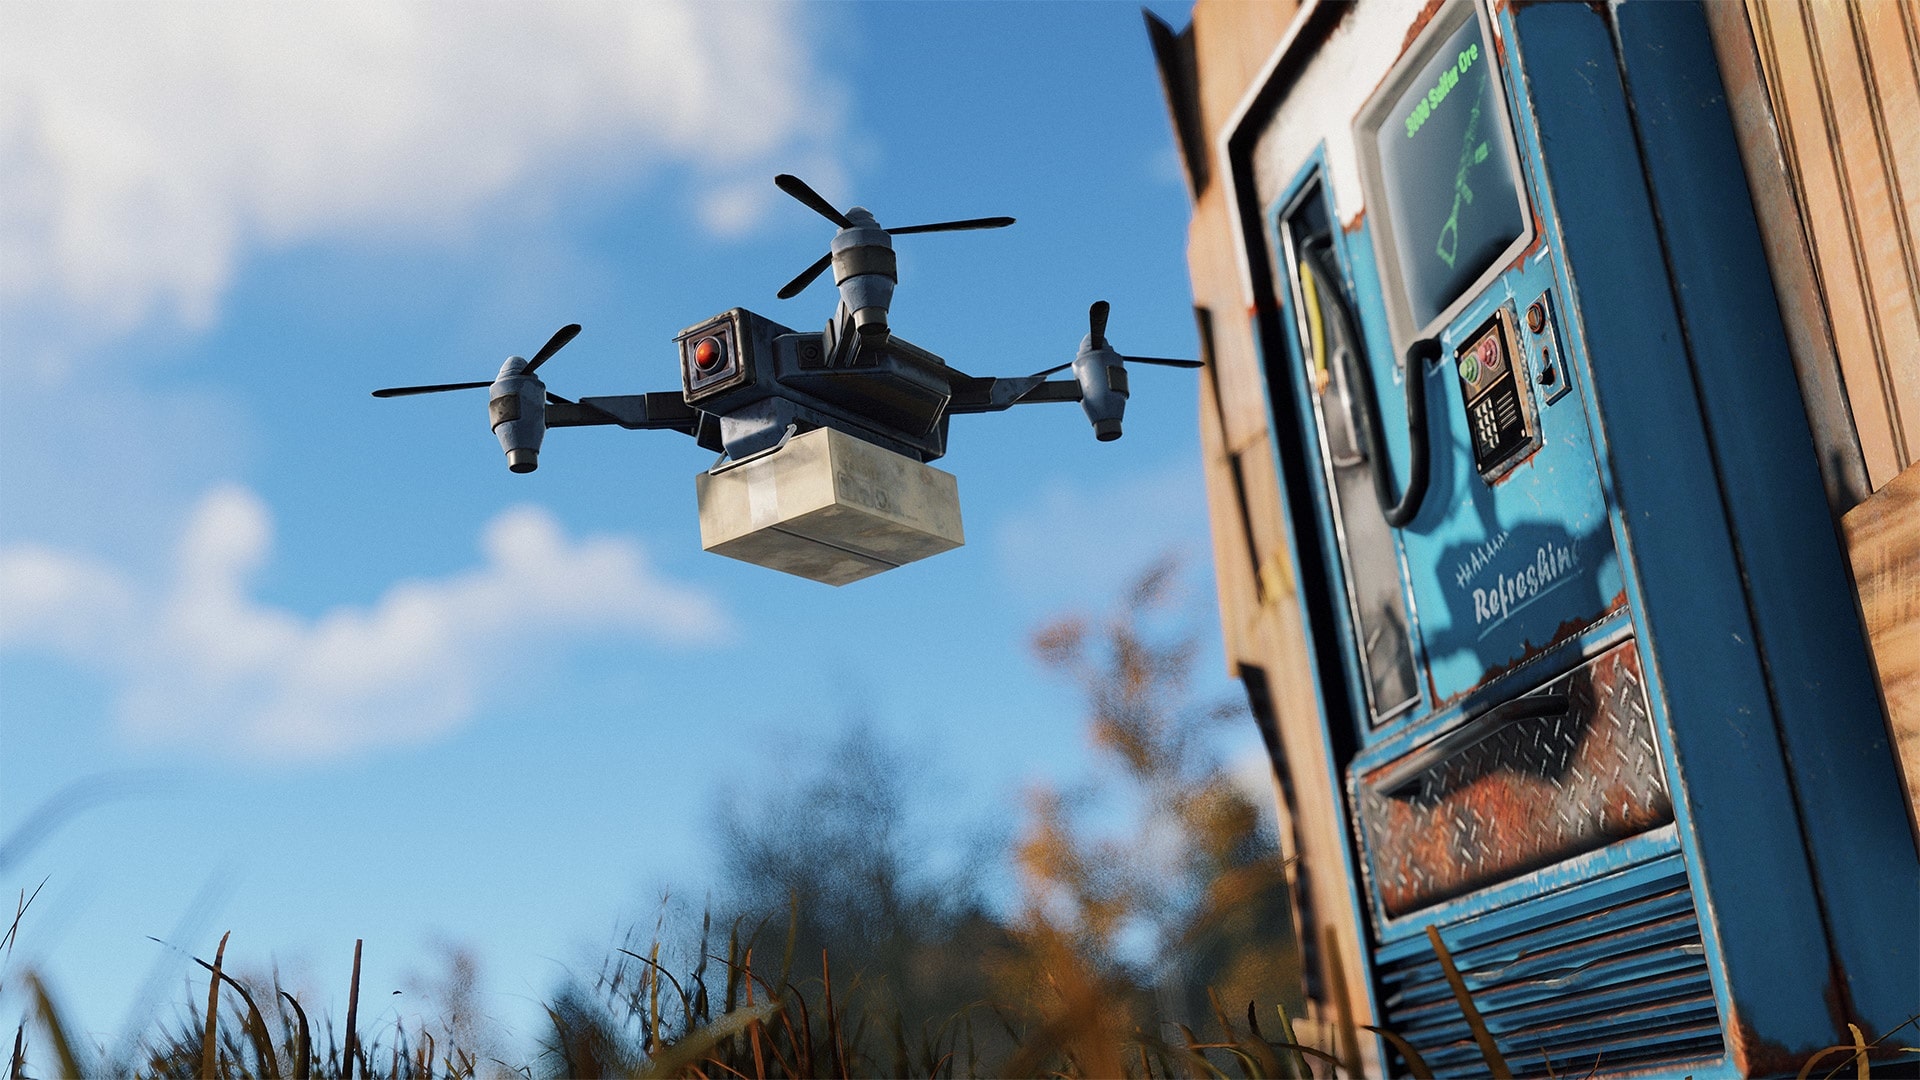 (In de Buitenpost en Bandietenkamp, kun je veilig items kopen van andere spelers via een drone. Dit komt omdat elke speler zijn eigen winkel kan openen om aan ruilhandel te doen).